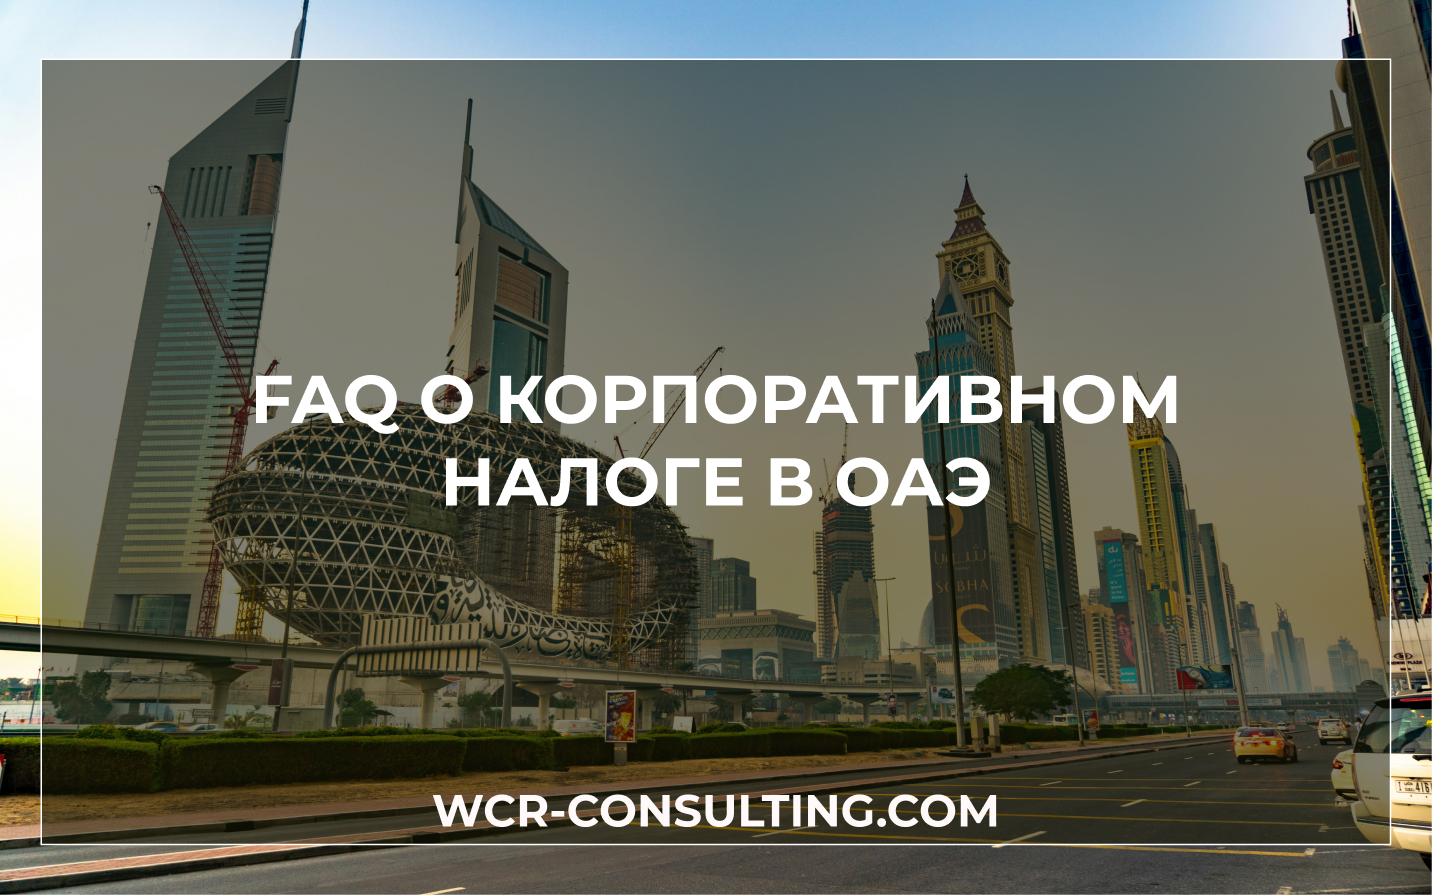 FAQ о корпоративном налоге в ОАЭ